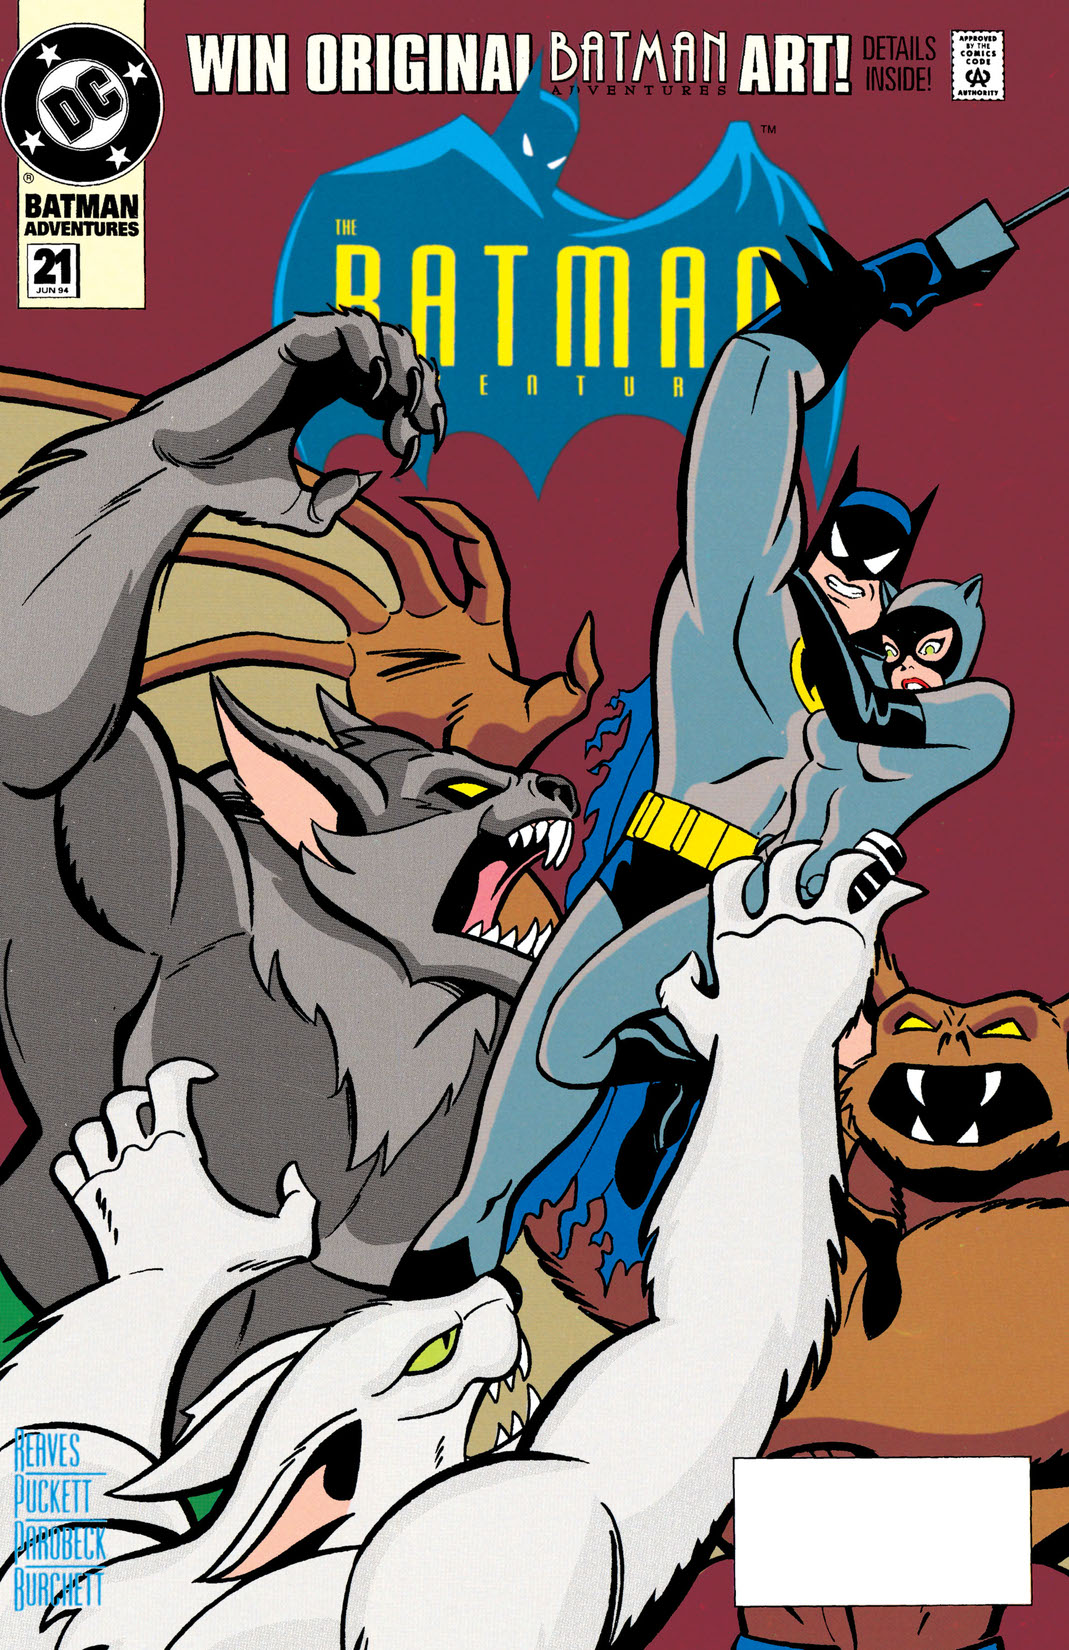 The Batman Adventures #21 preview images